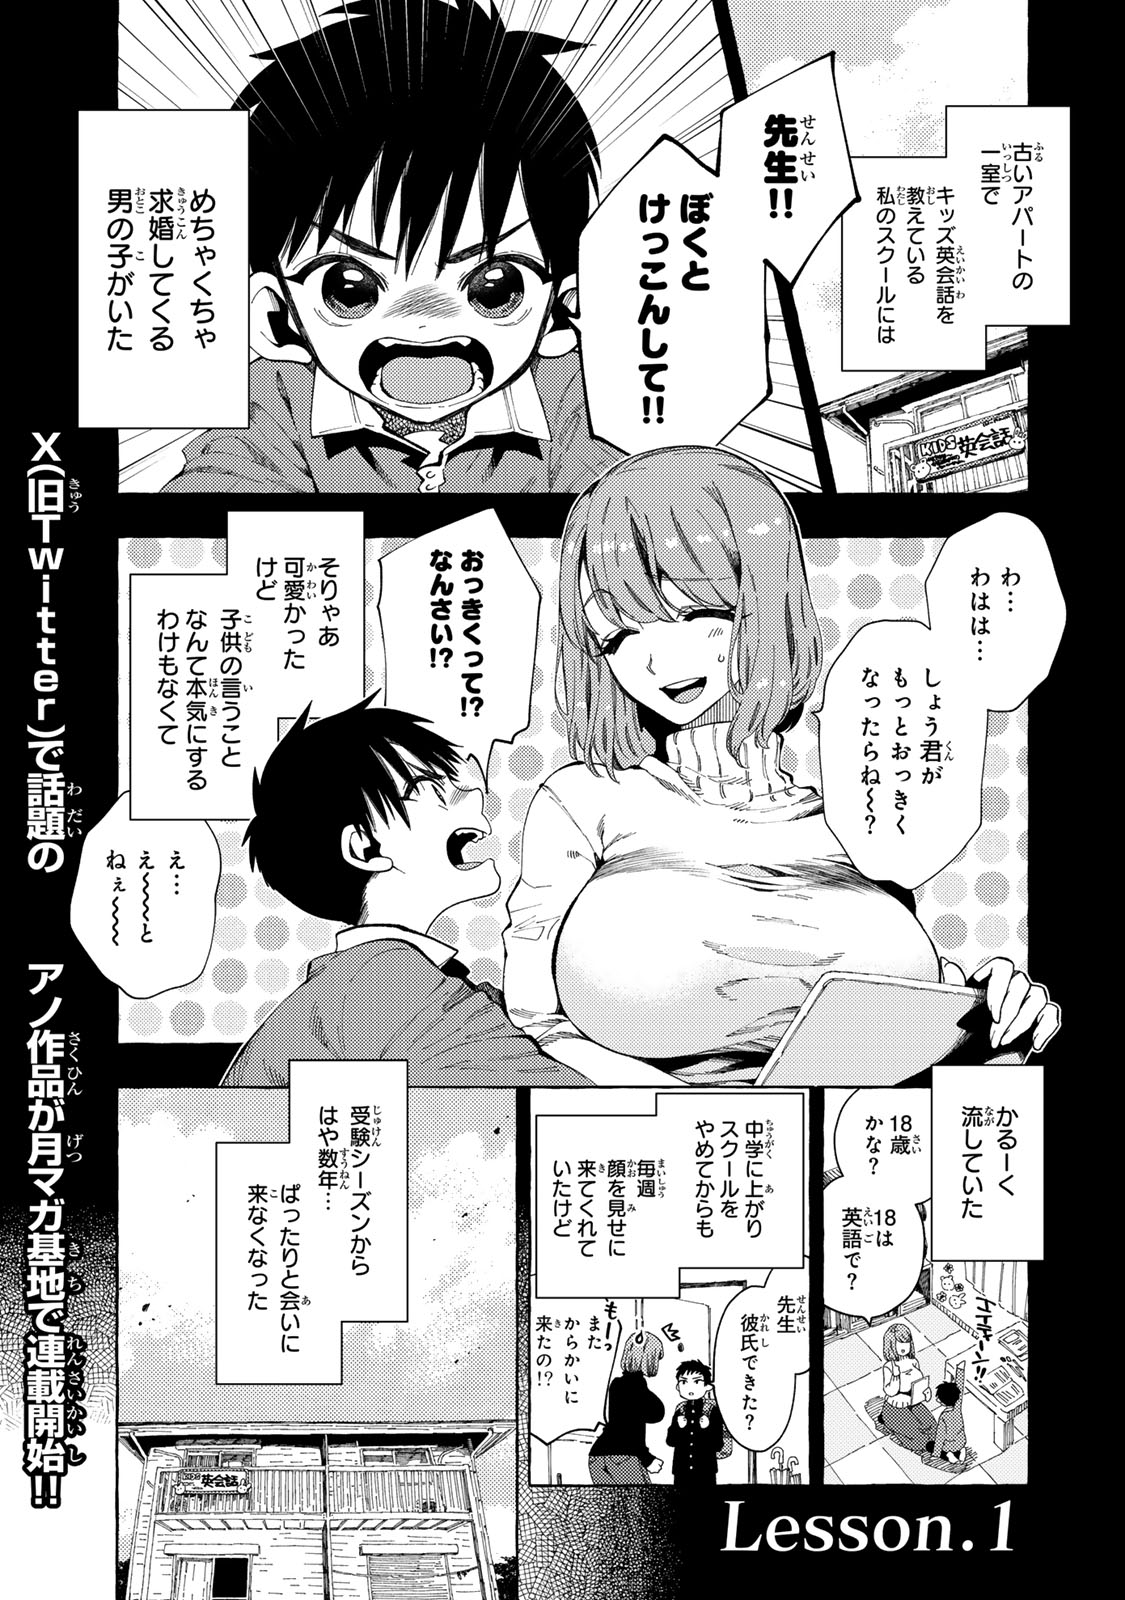 Oshiego-kun to wa Dekimasen - Chapter 1 - Page 1